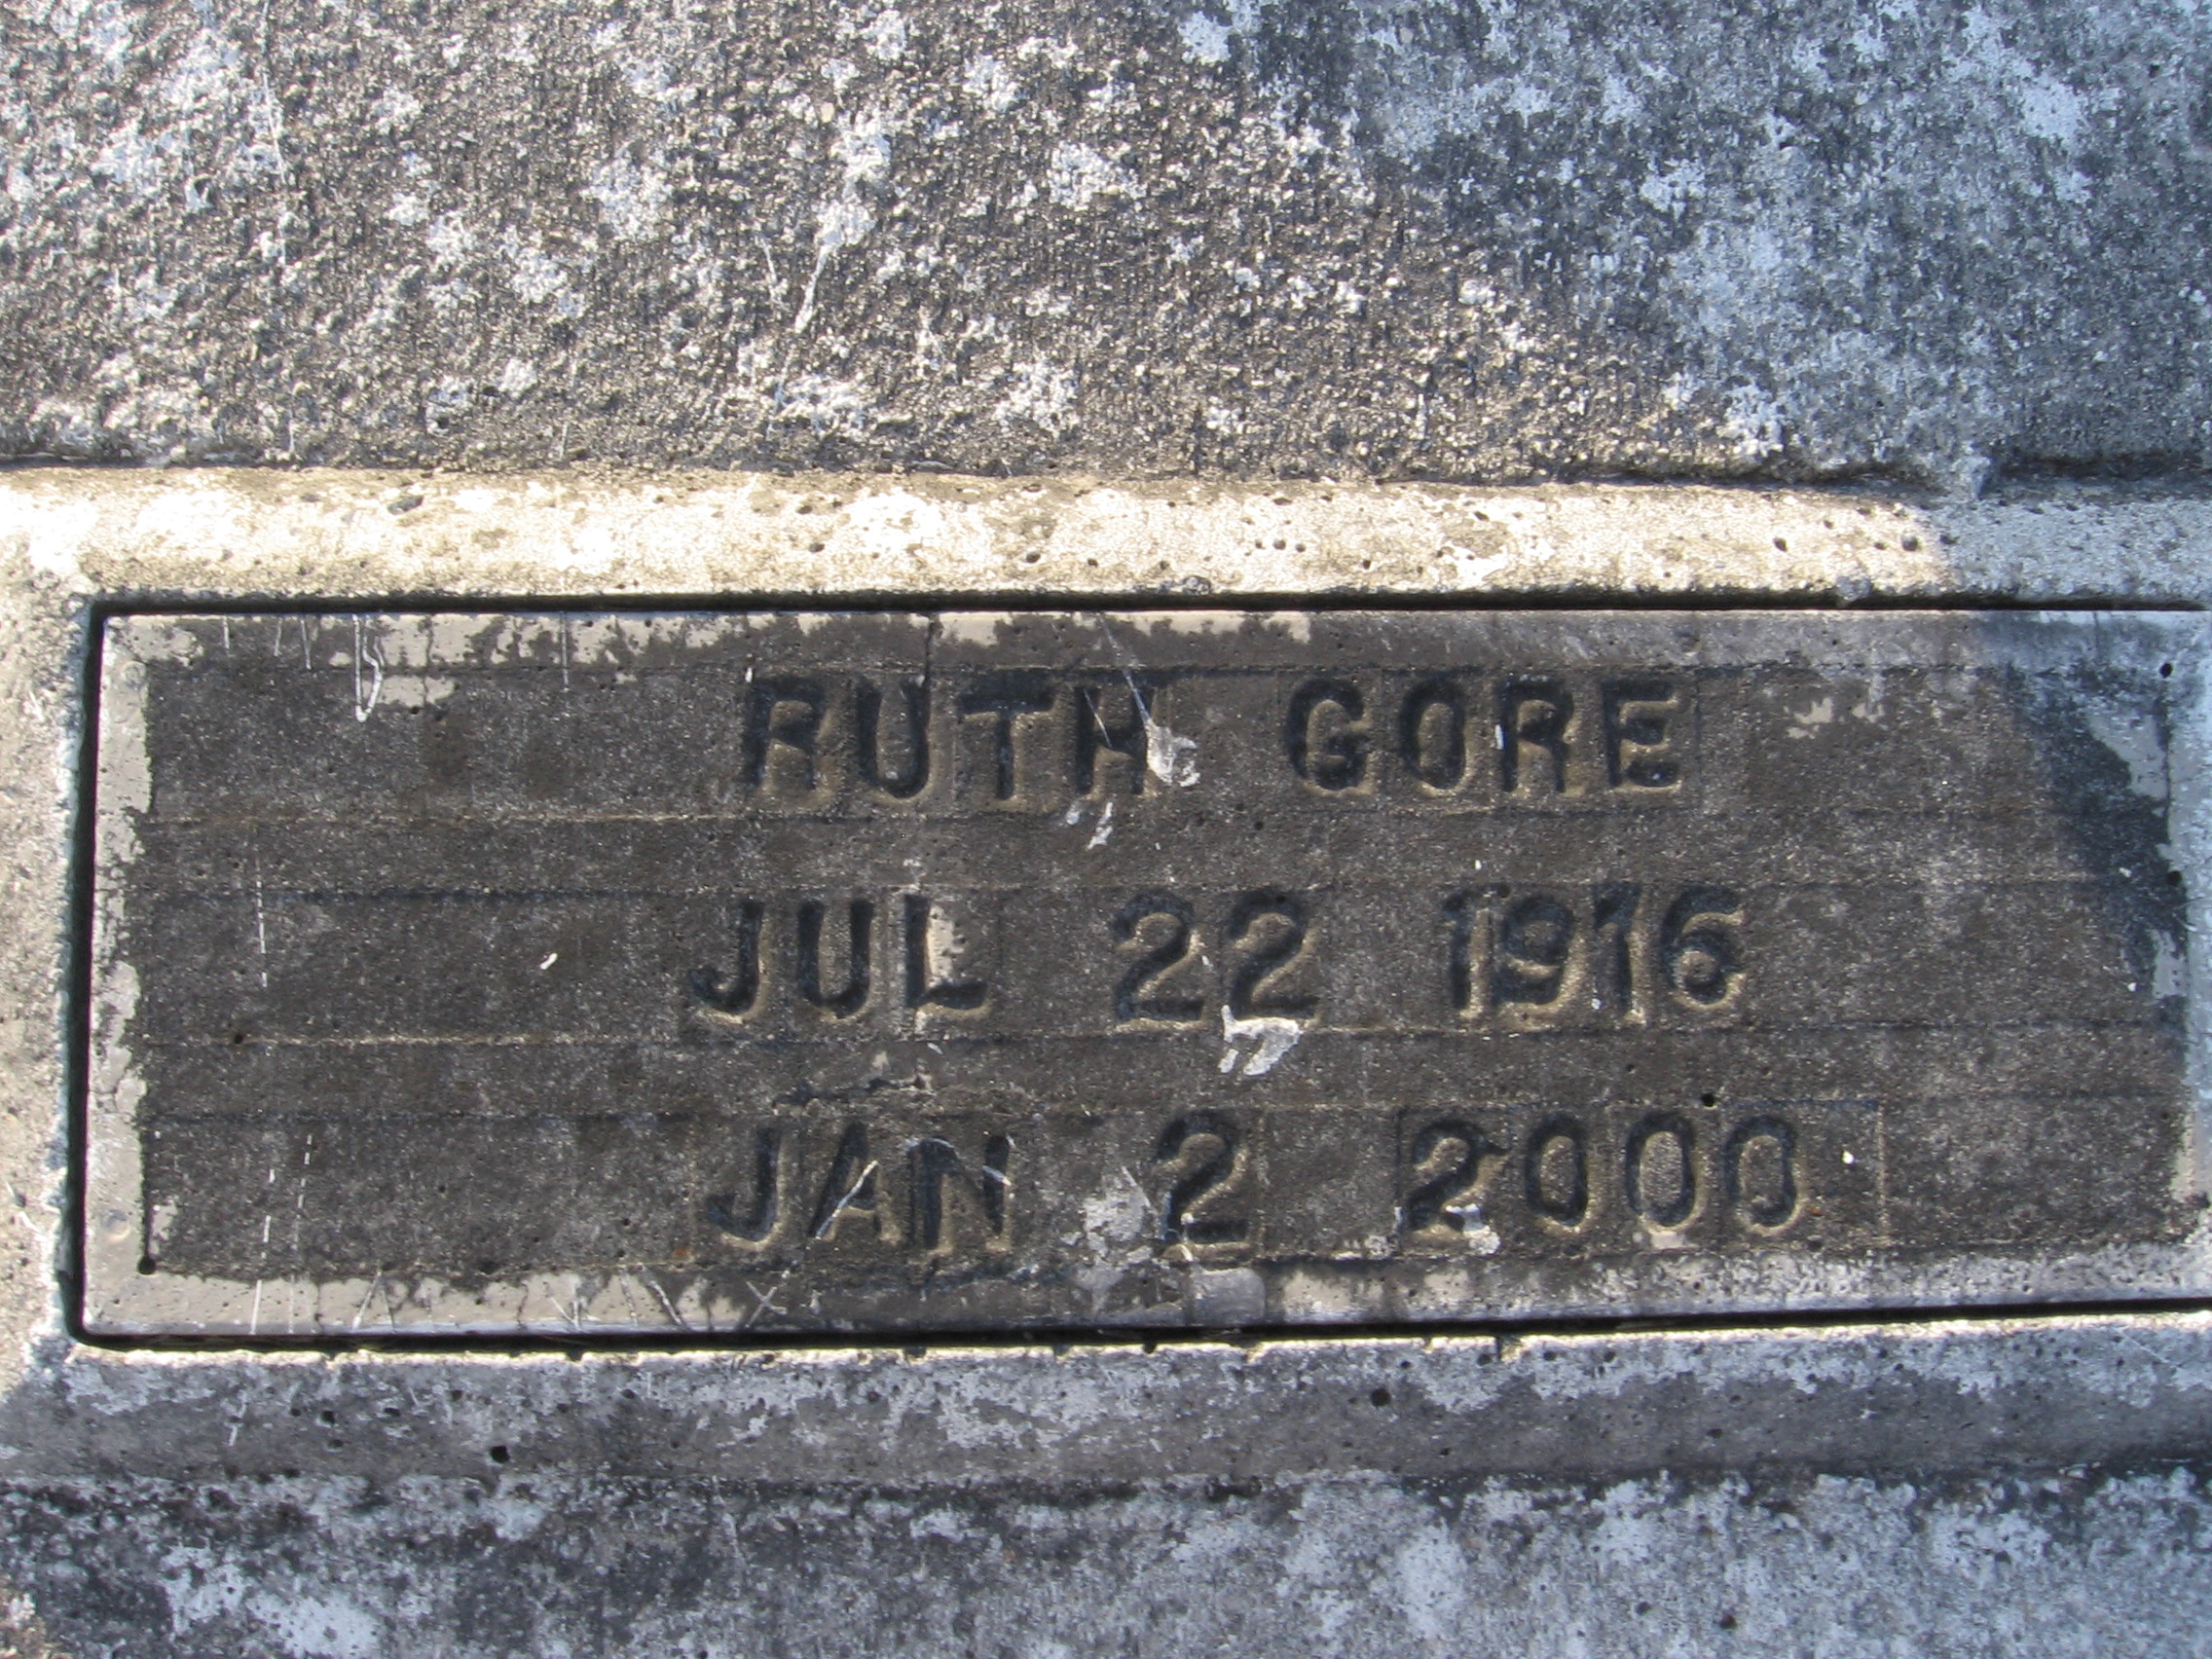 Ruth Gore